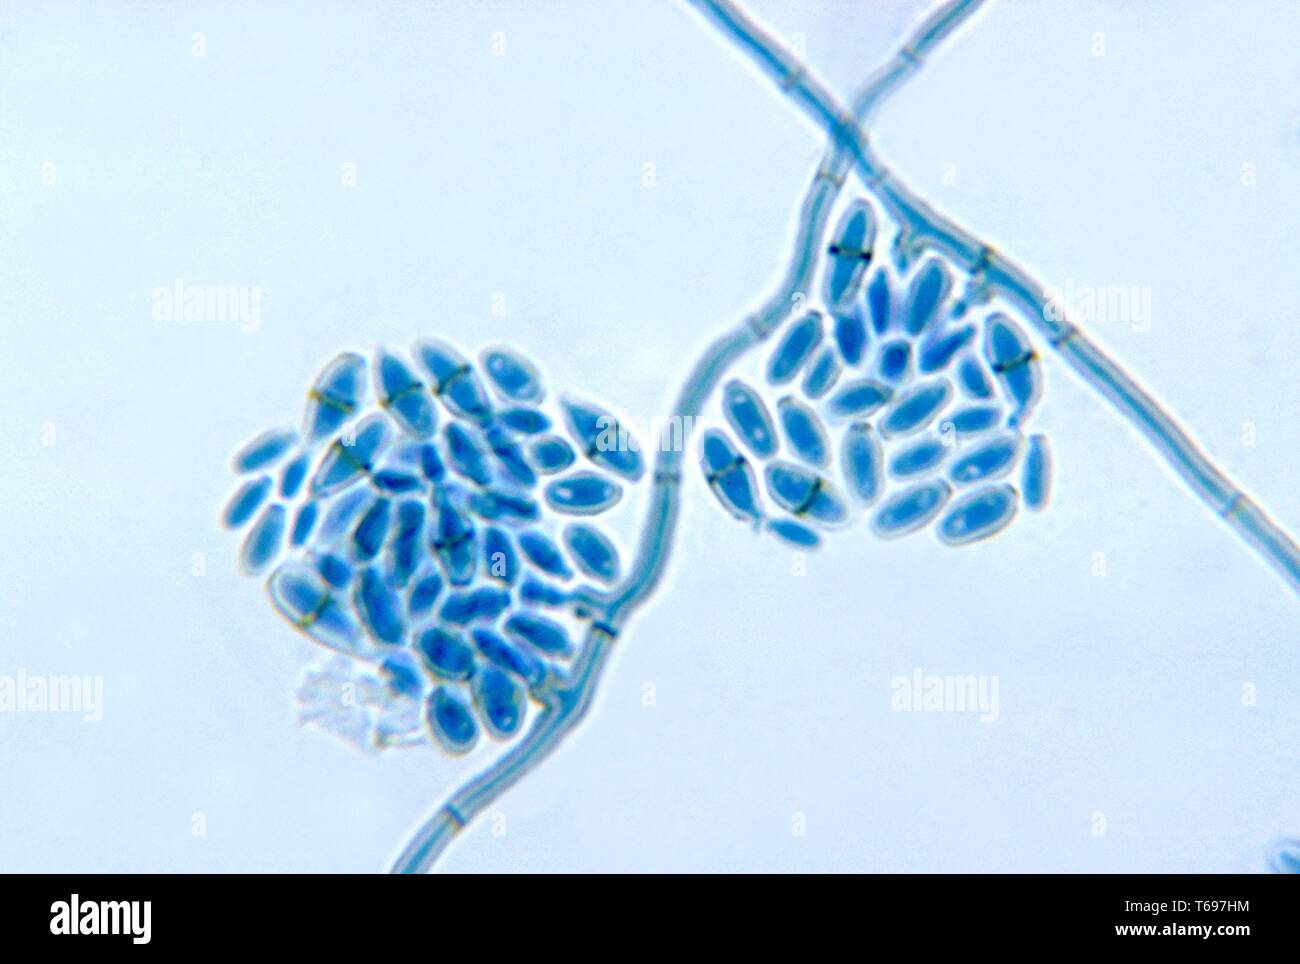 Der Photomicrograph conidiophores mit Konidien der Pilz Cladosporium werneckii, 1972. Bild mit freundlicher Genehmigung Zentren für Krankheitskontrolle und Prävention (CDC)/Dr Libero Ajello. () Stockfoto